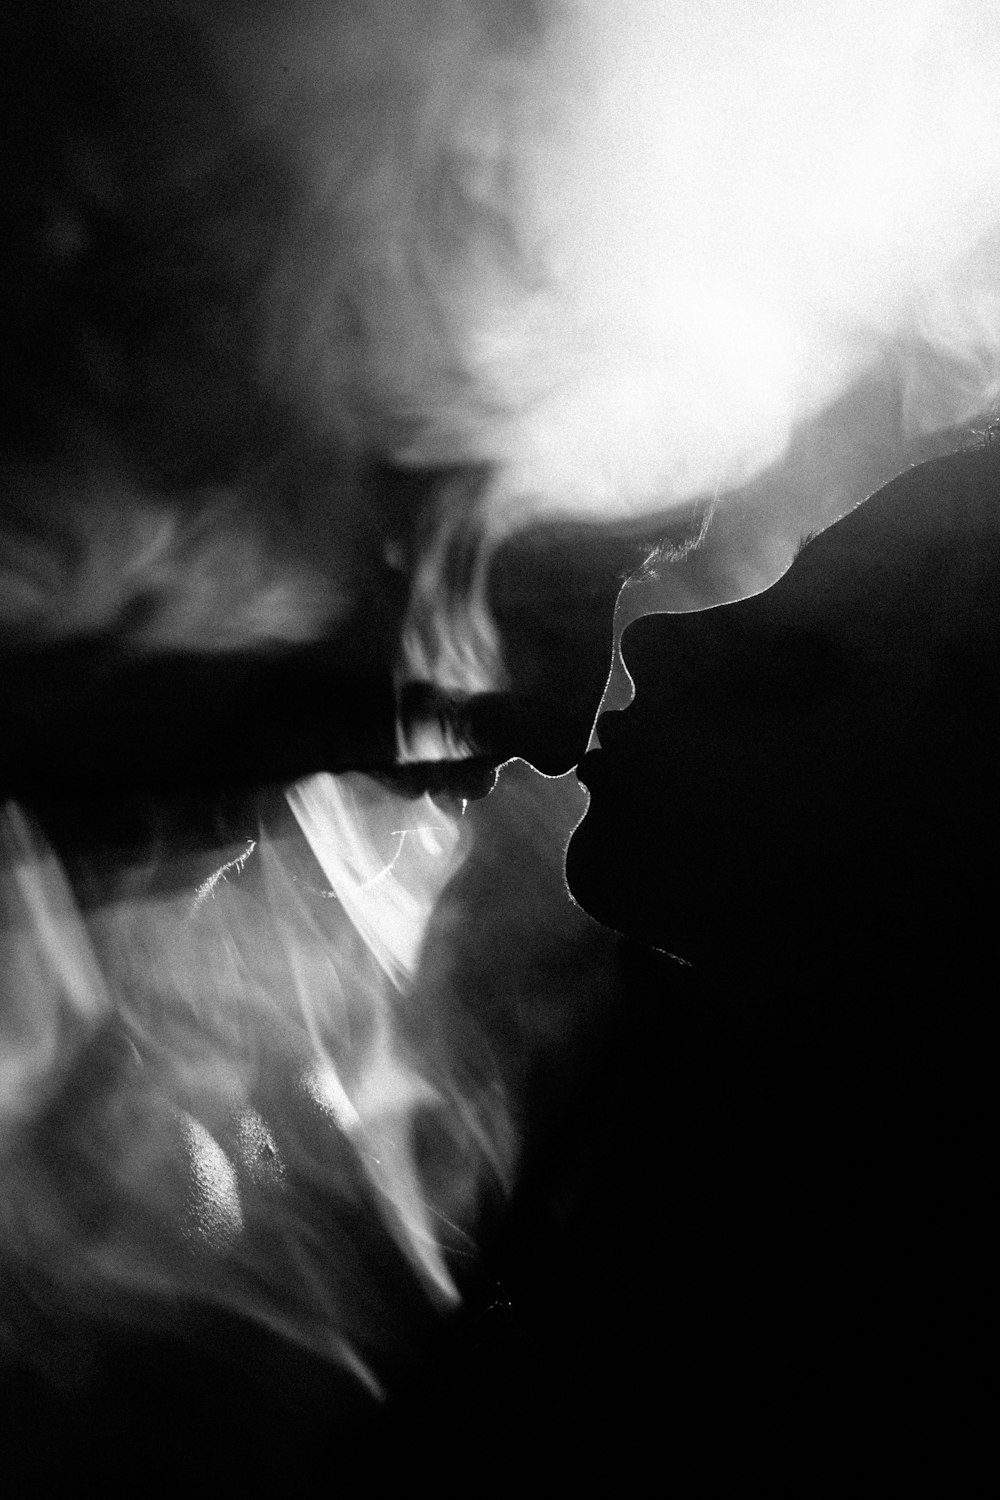 담배를 피우는 사람의 흑백 사진